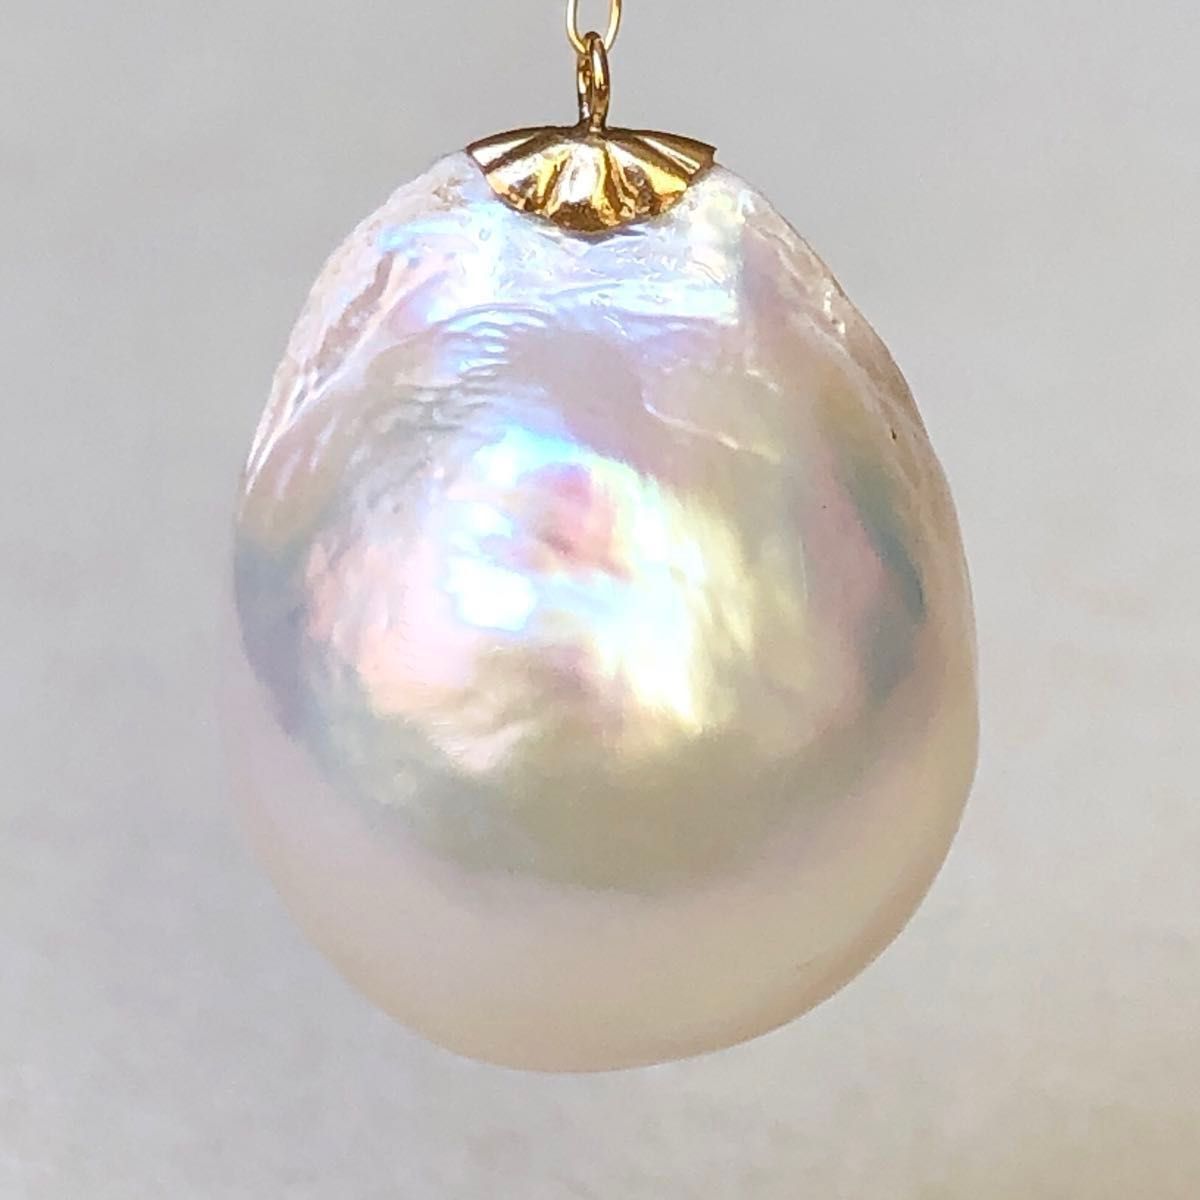 本真珠　超大粒20㍉トップ　エジソンパール　ドロップの形　美品ホワイト系オーロラ　18金チャーム　天然淡水真珠ネックレストップ用